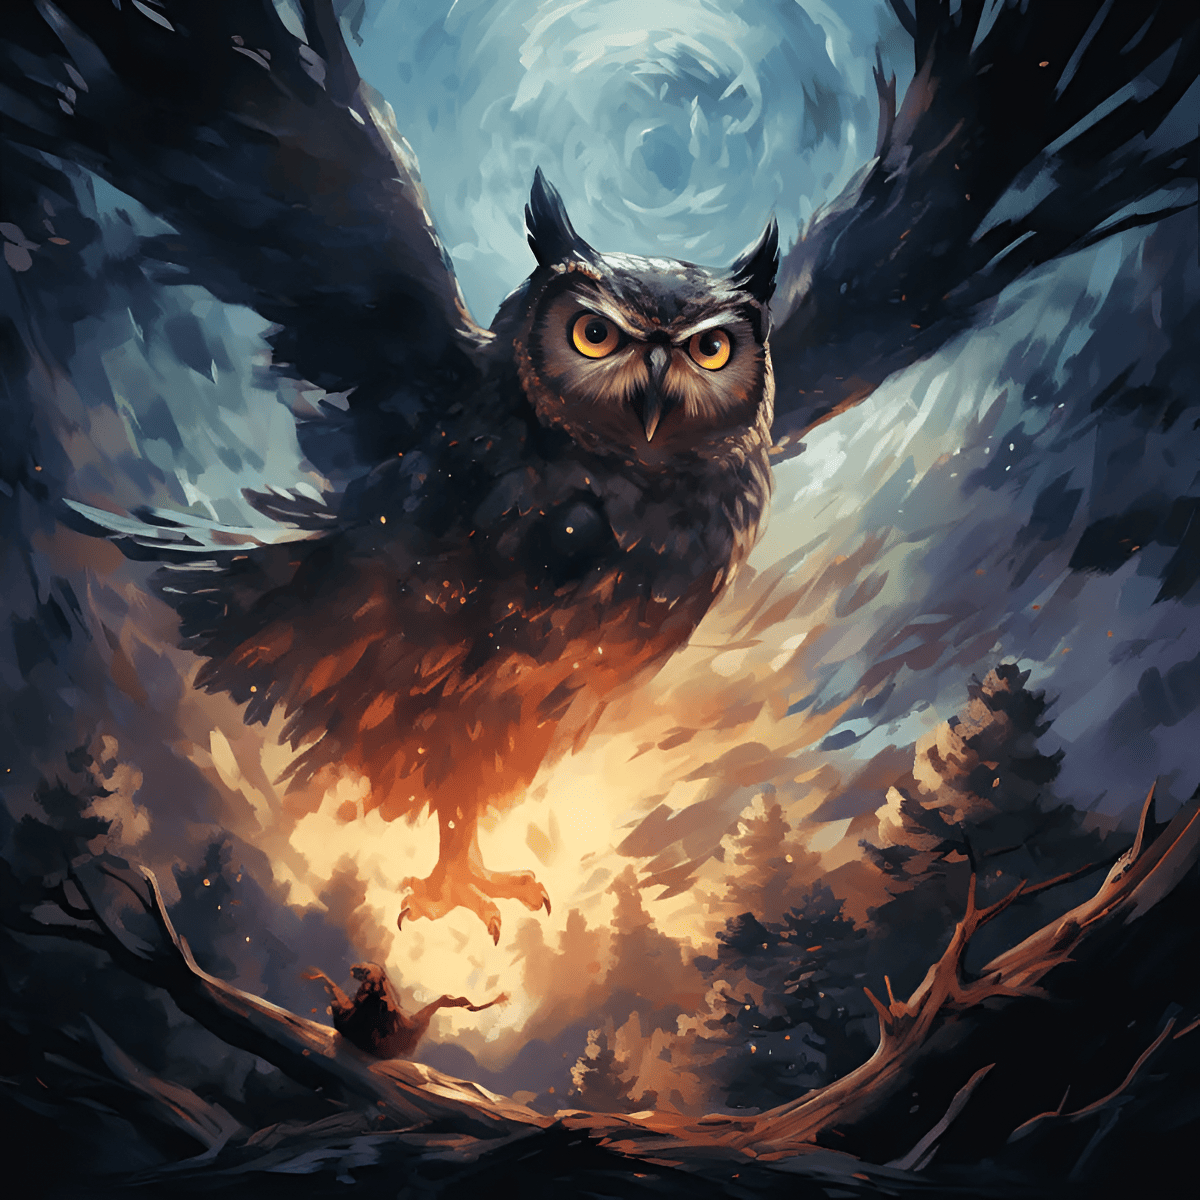 a fierce looking owl